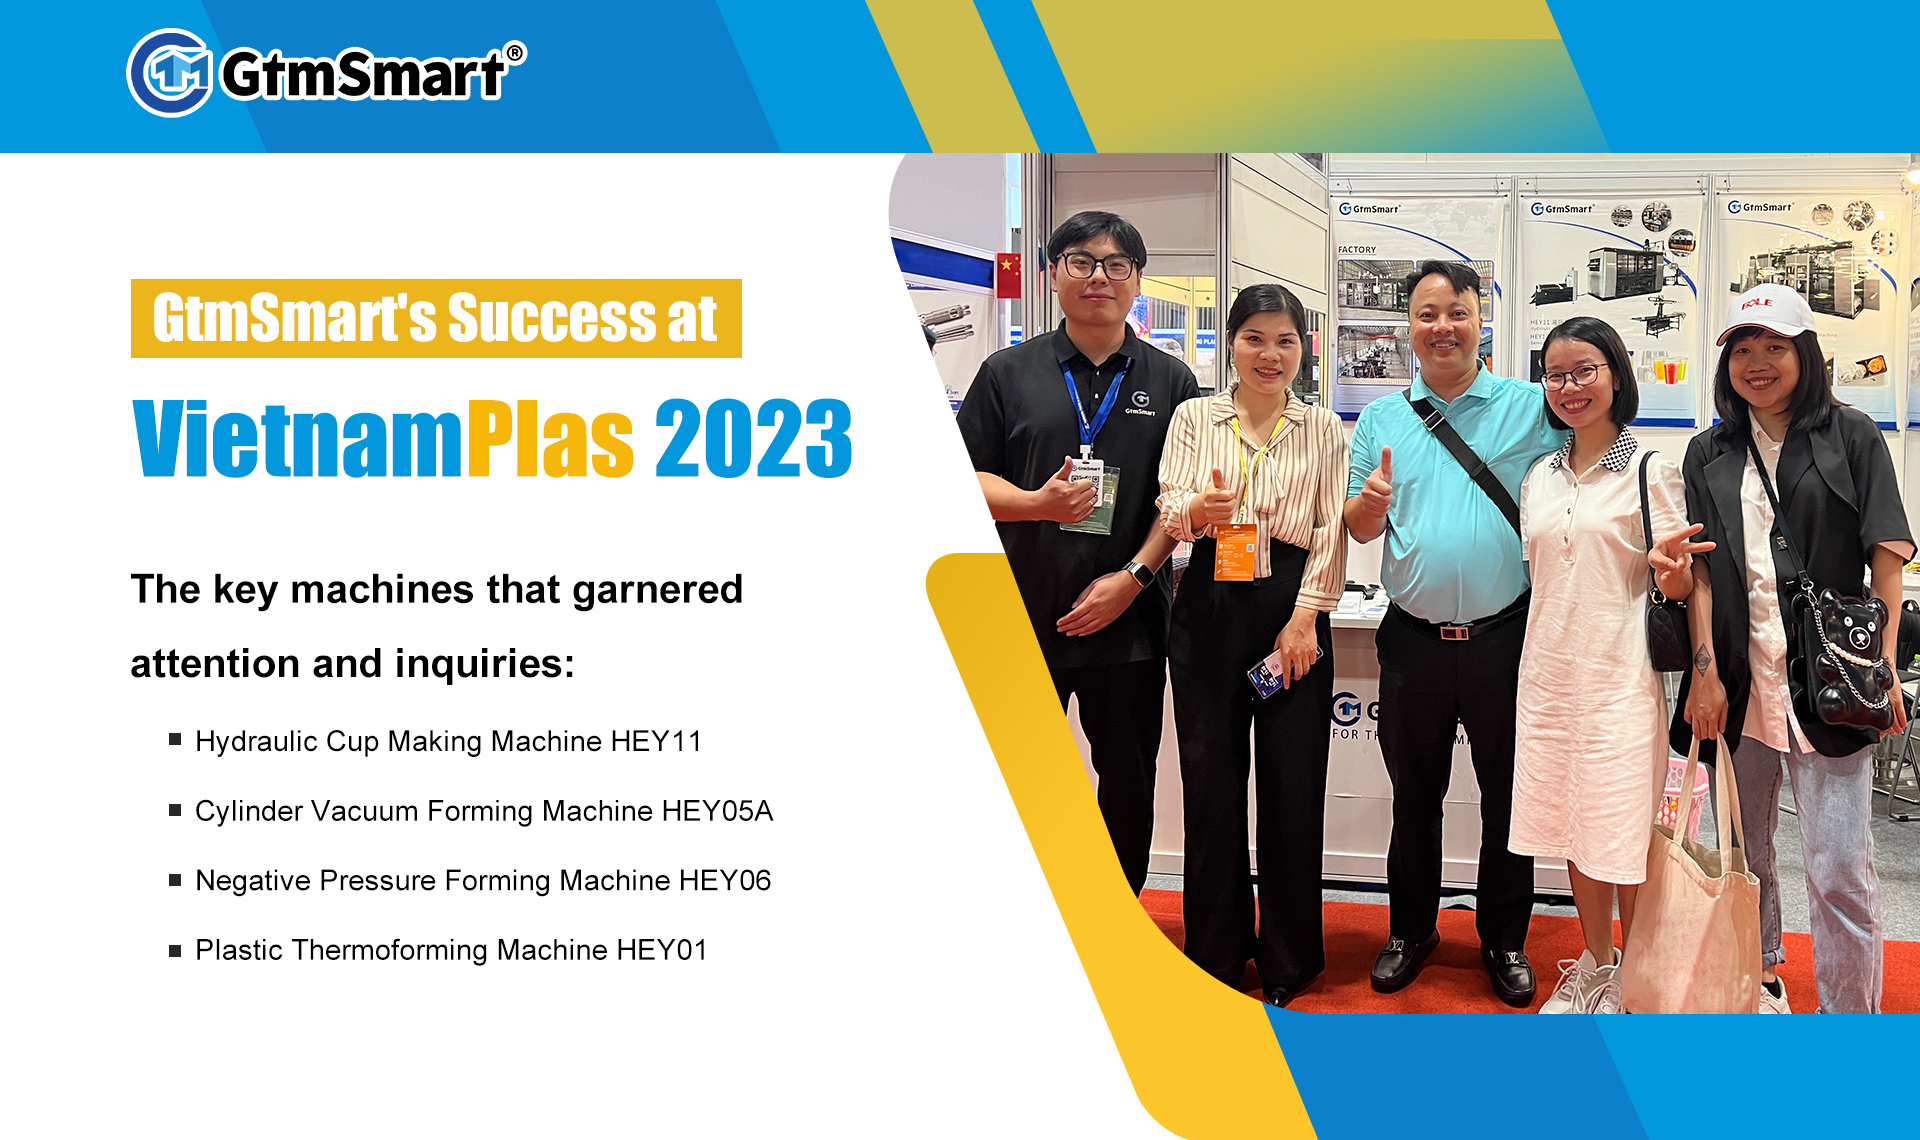 Éxito de GtmSmart en VietnamPlas 2023